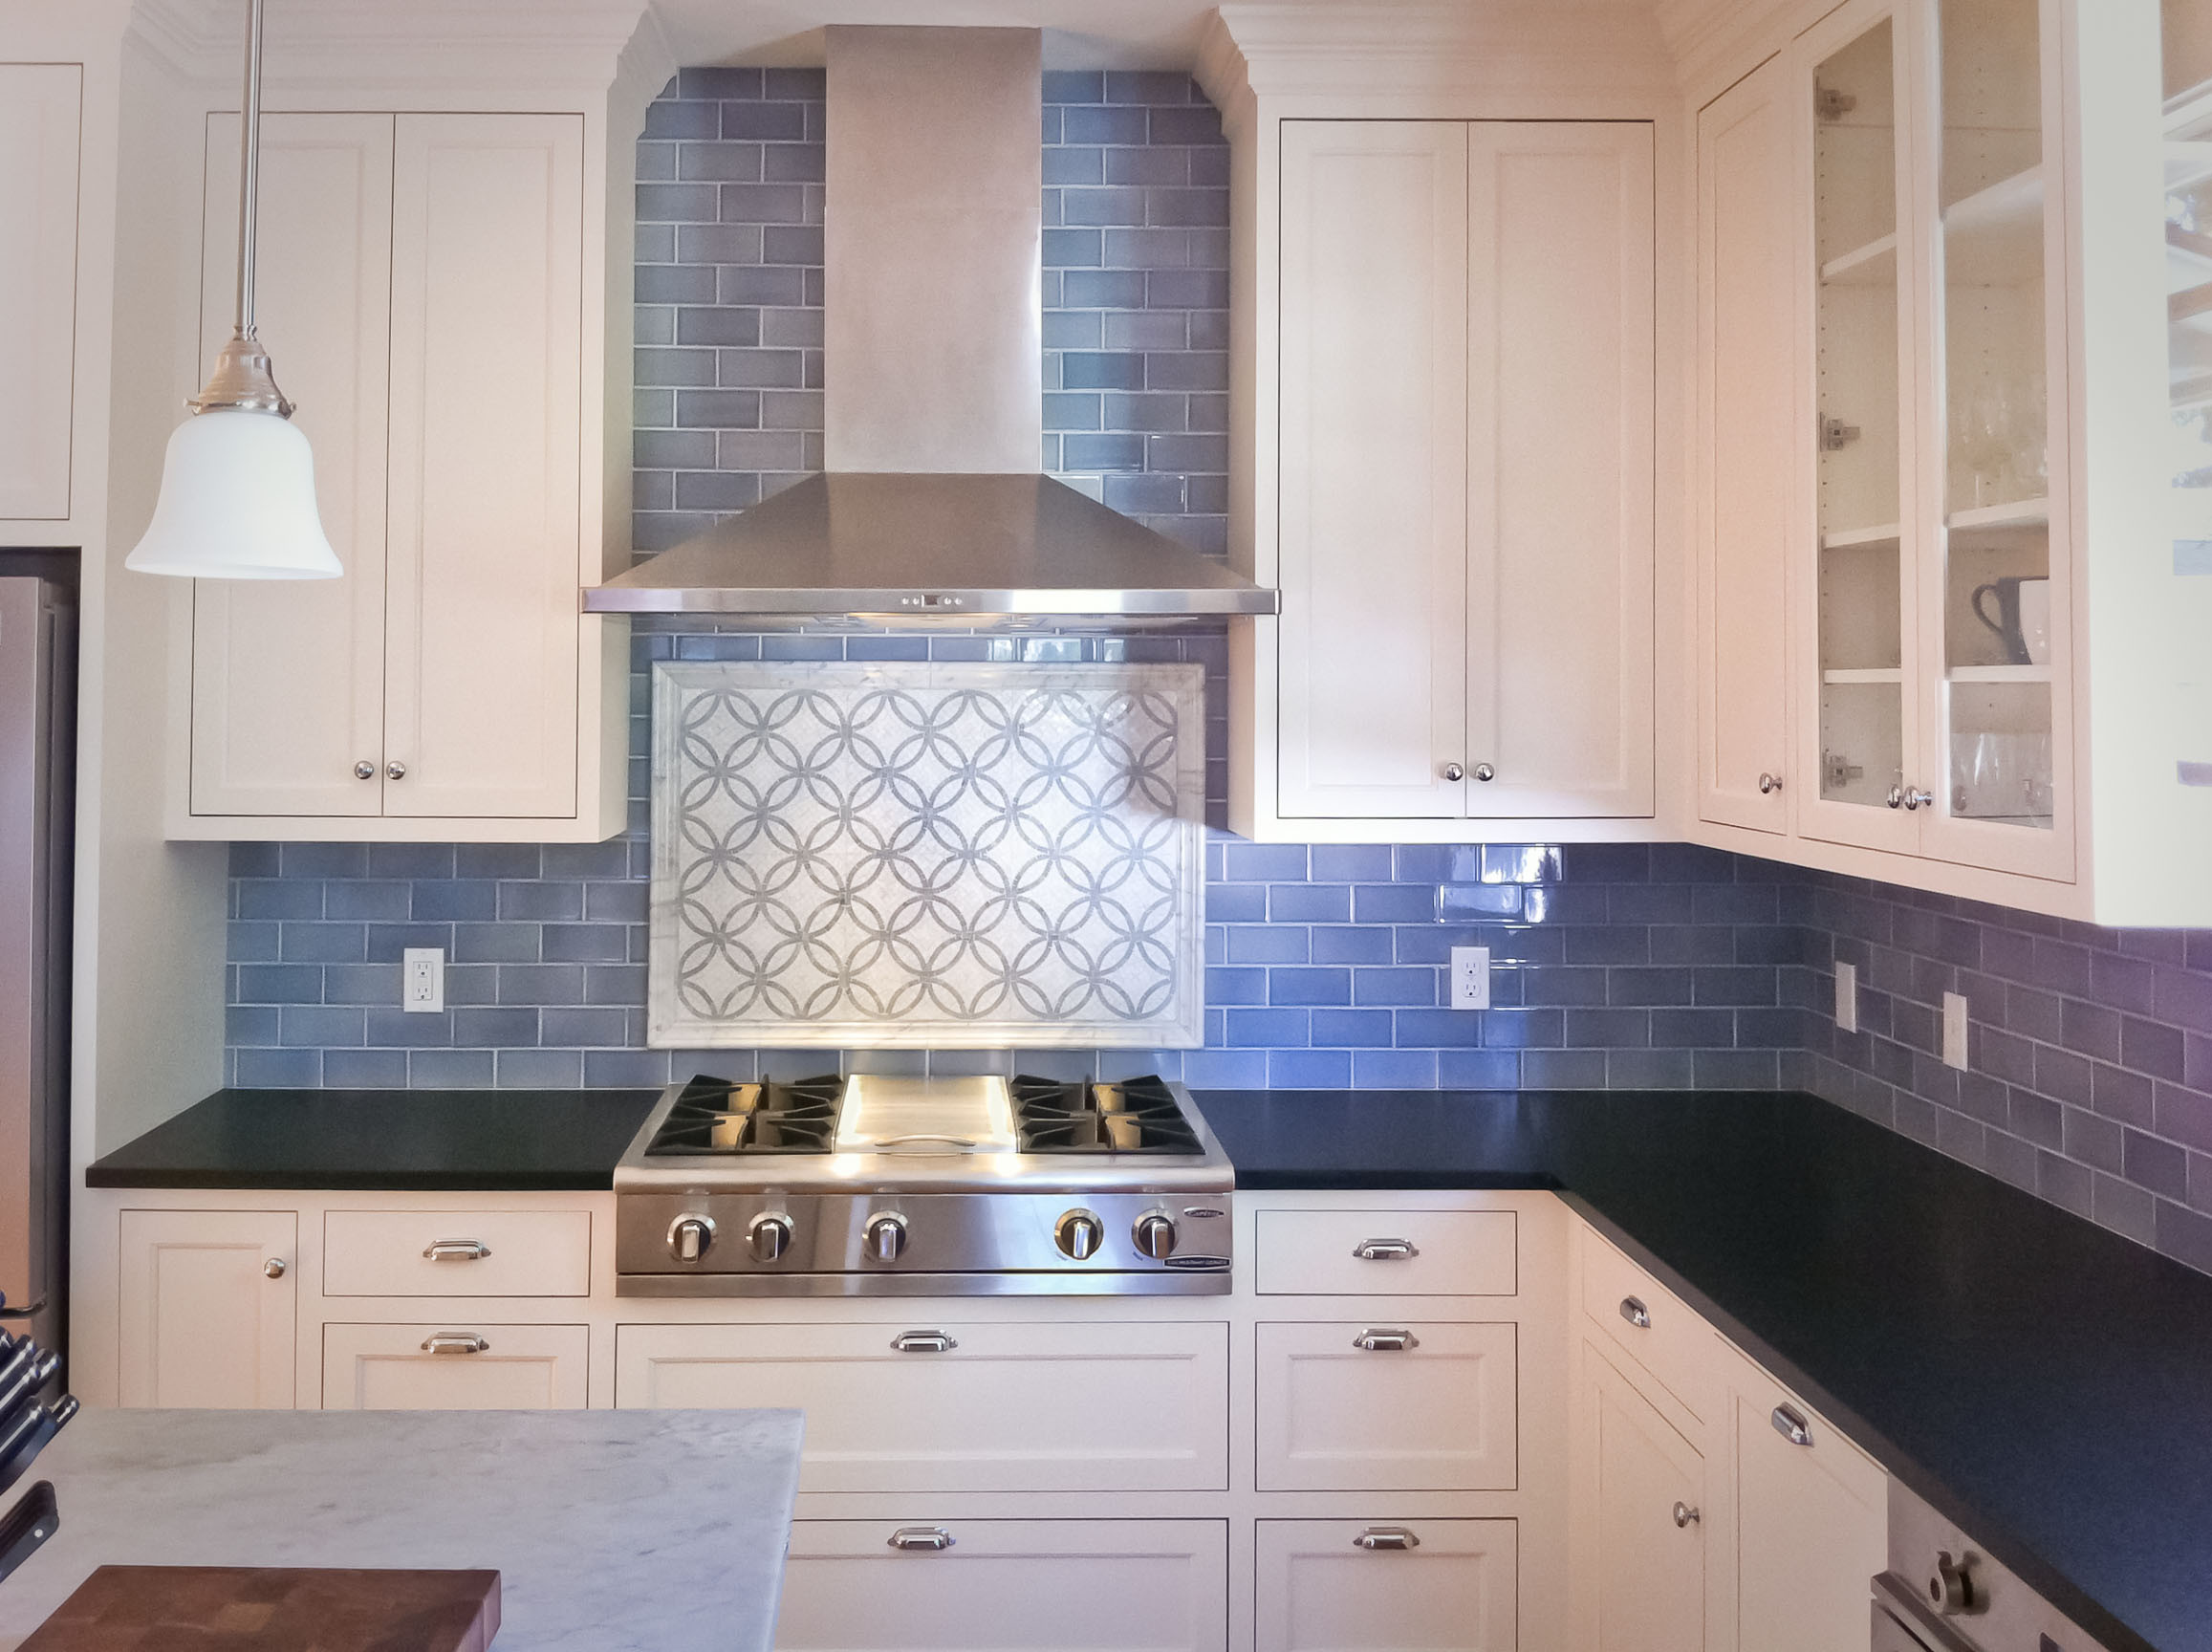 Blue Grey Kitchen Backsplash
 75 Kitchen Backsplash Ideas for 2020 Tile Glass Metal etc